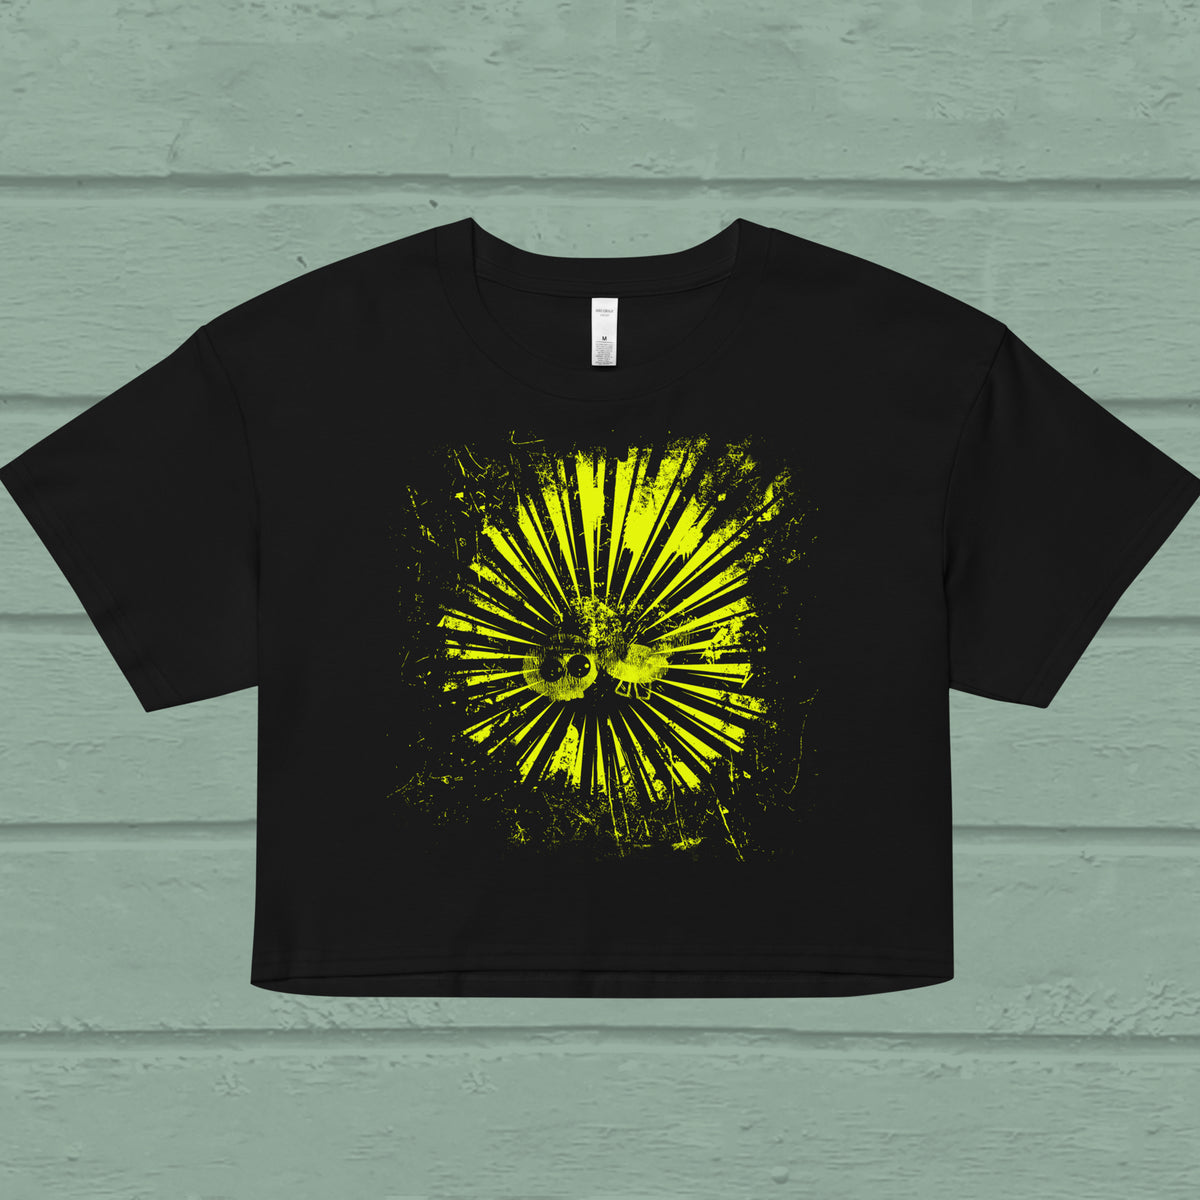 Big Bang Crop Top, yellow bang